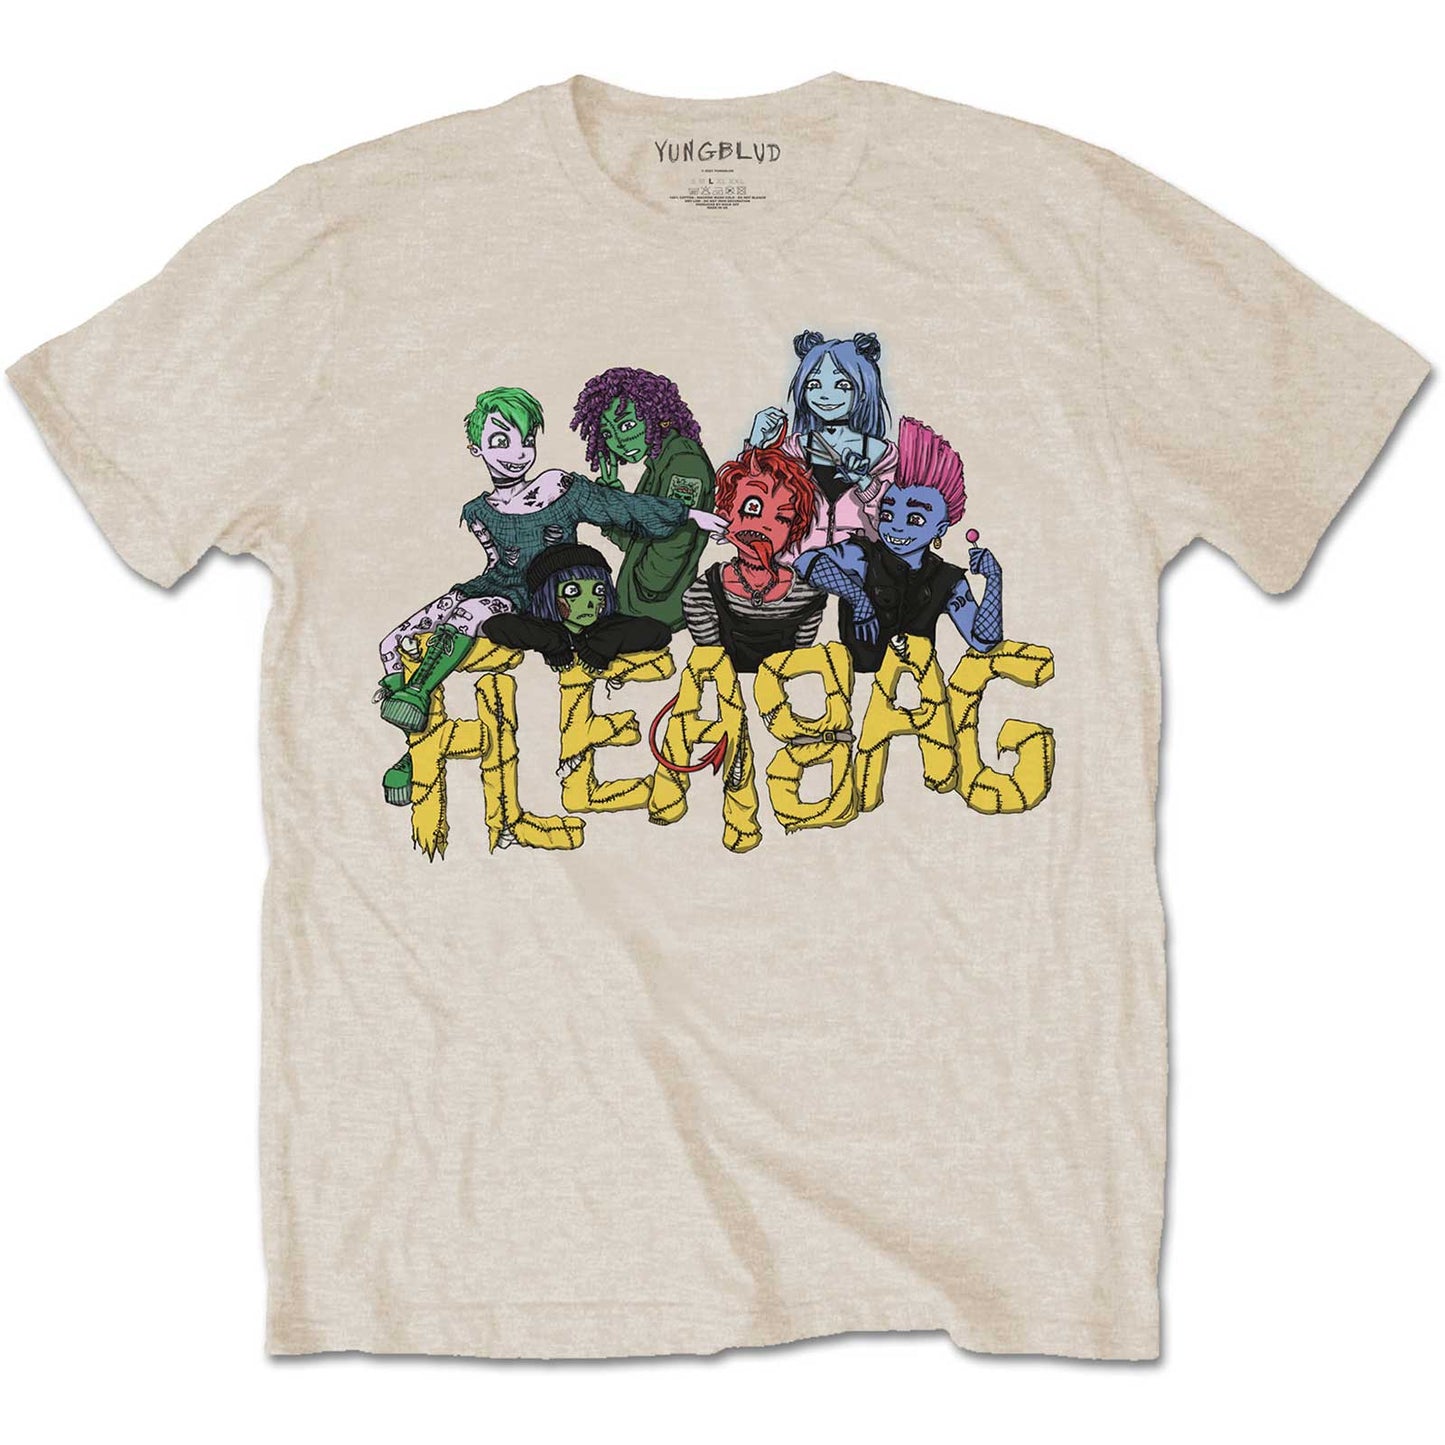 Yungblud T-Shirt: Fleabag